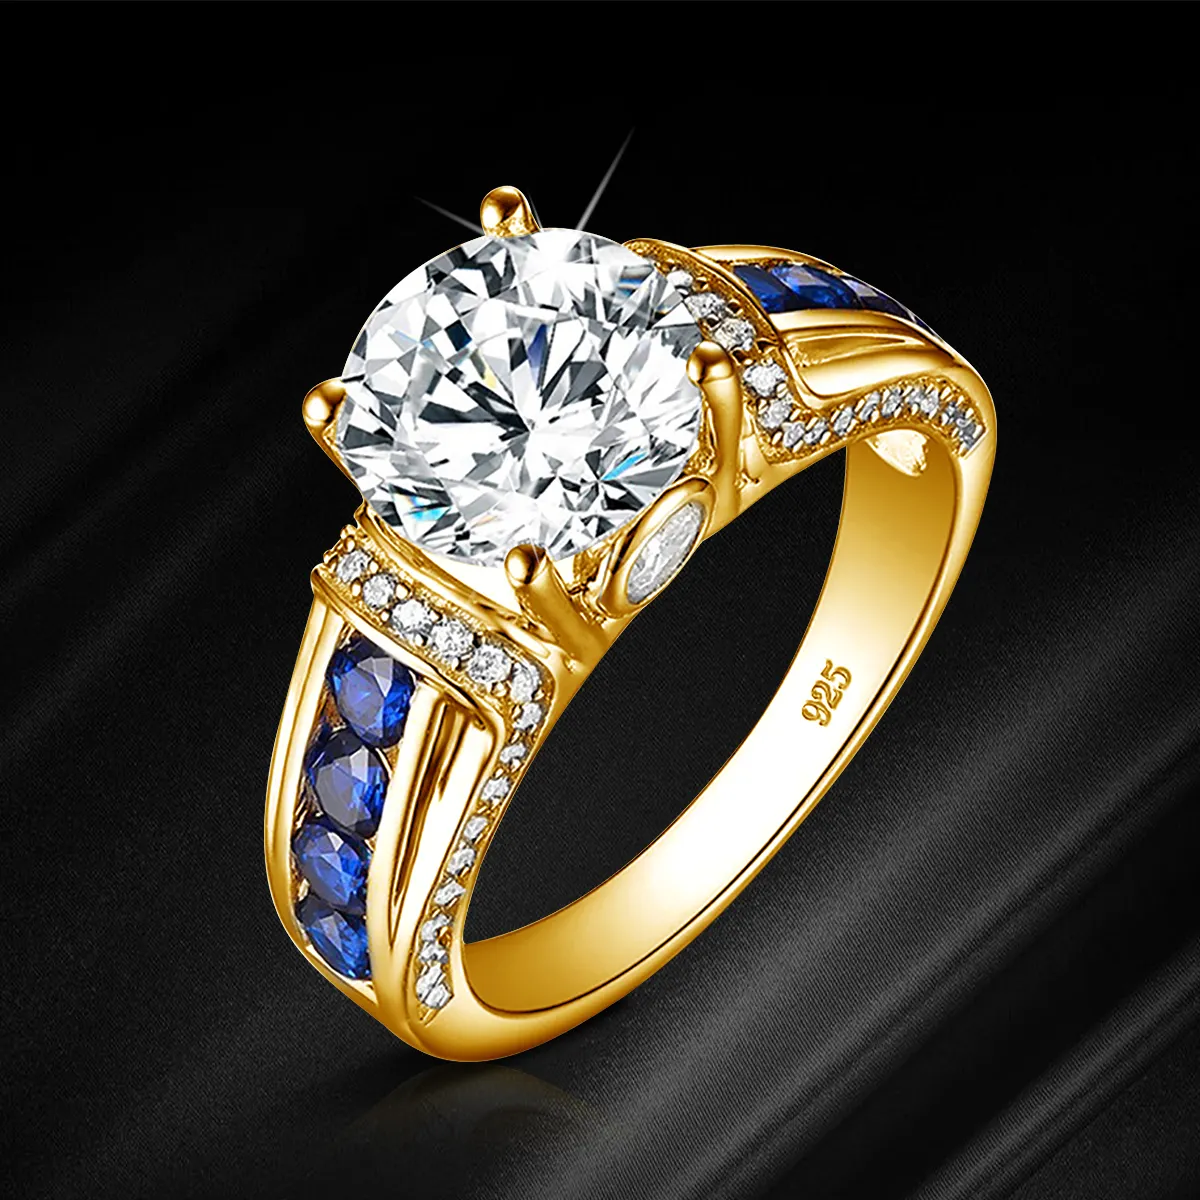 Pierre précieuse fine personnalisée réglable or émeraude 925 argent Sterling diamant fiançailles bijoux de mariage femmes bague Moissanite